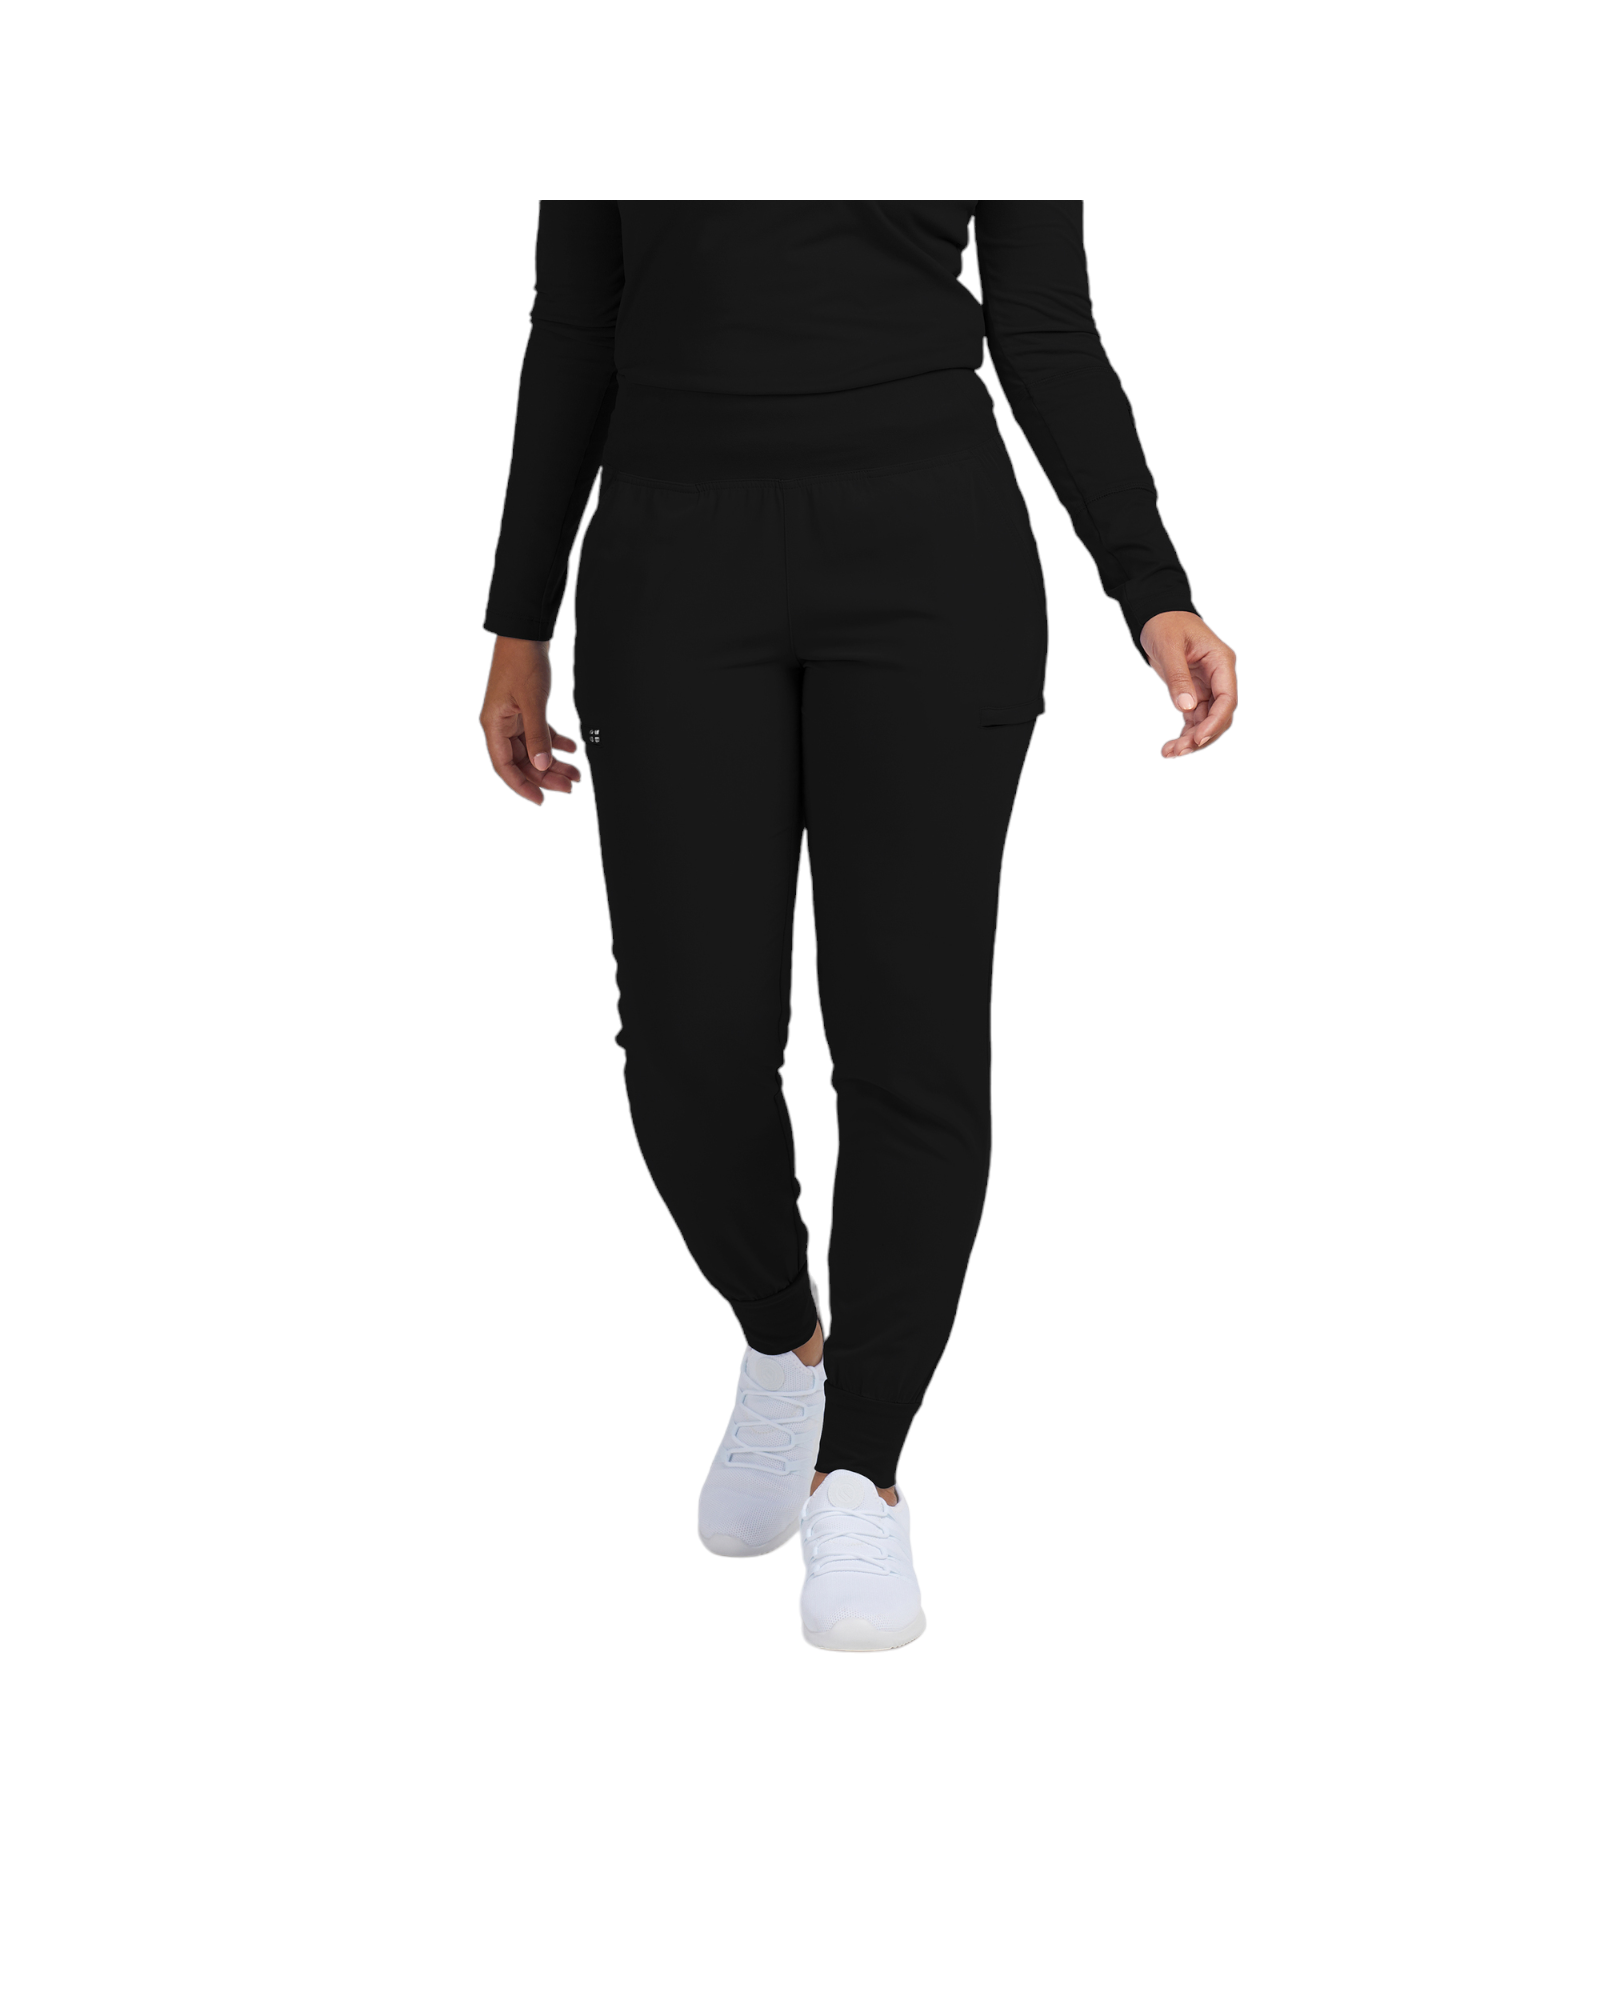 Pantalon jogger avec 6 poches pour femme White Cross CRFT #WB430 couleur Noir